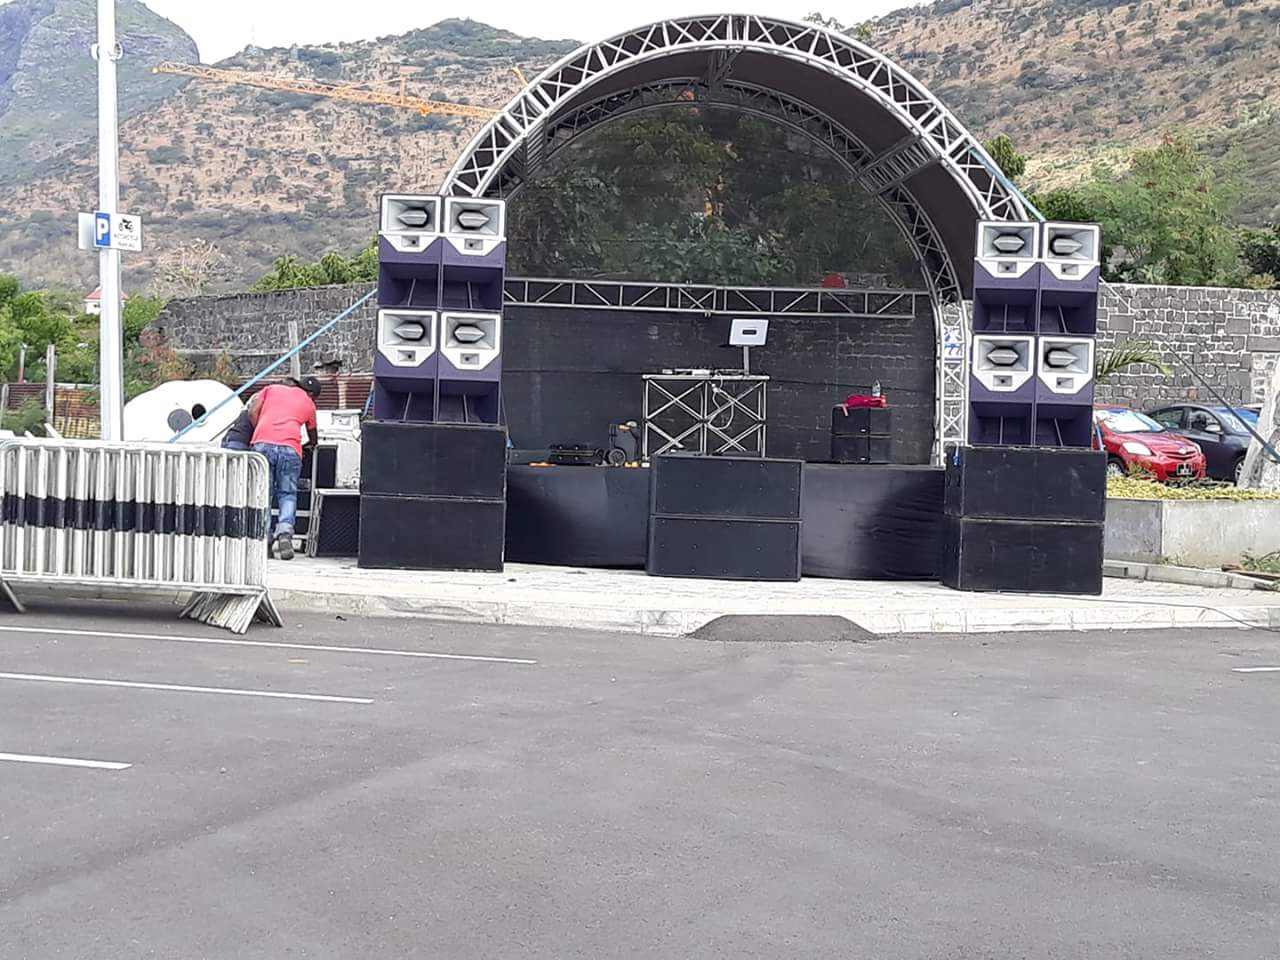 El altavoz de rango completo Sanway R2 ofrece un emocionante concierto de música al aire libre en Mauricio